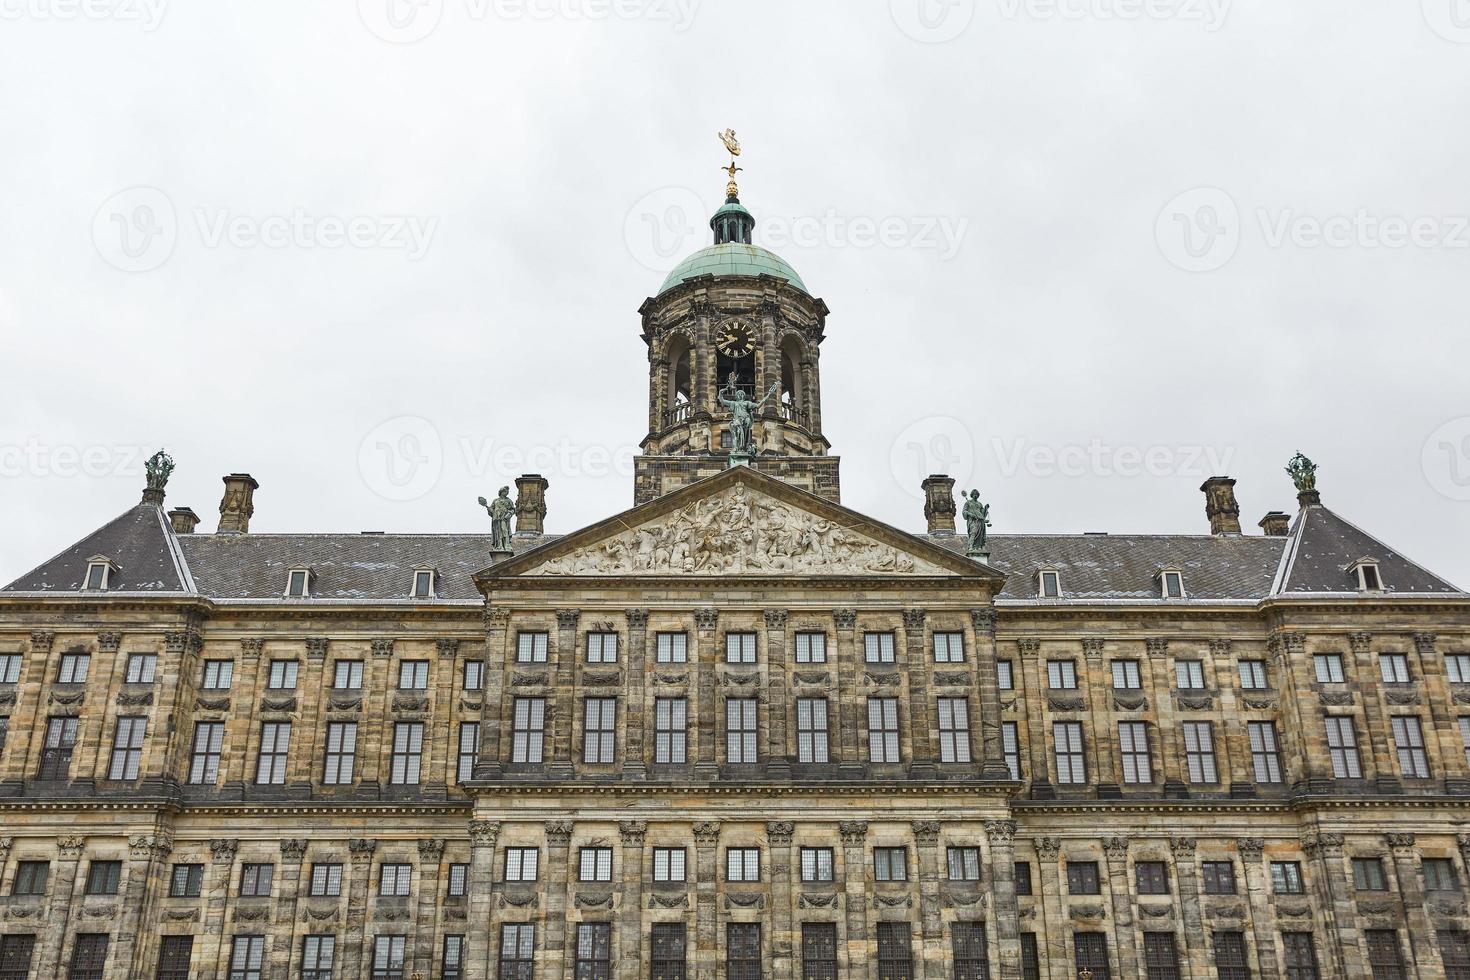 der königliche palast am dammplatz in amsterdam, niederlande foto